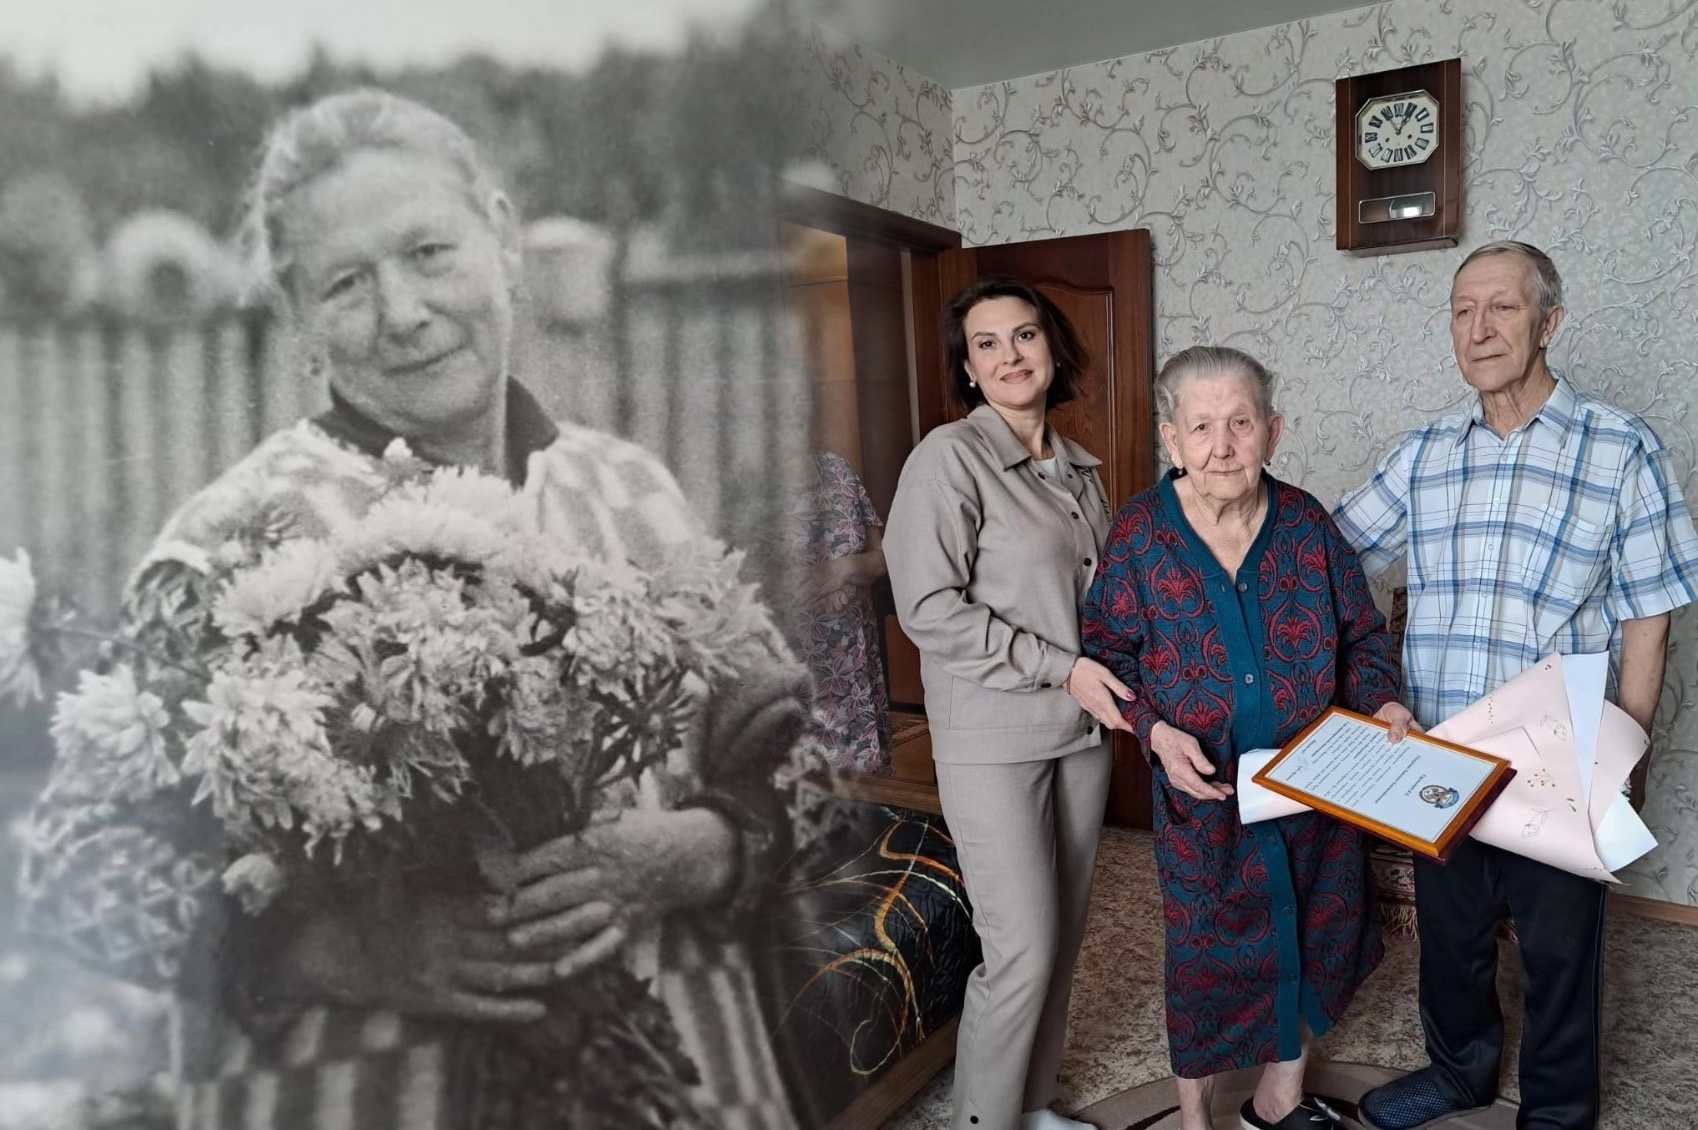 «Шила одежду для армии, работала лудильщиком»: история жизни ярославны, отметившей 101-й день рождения